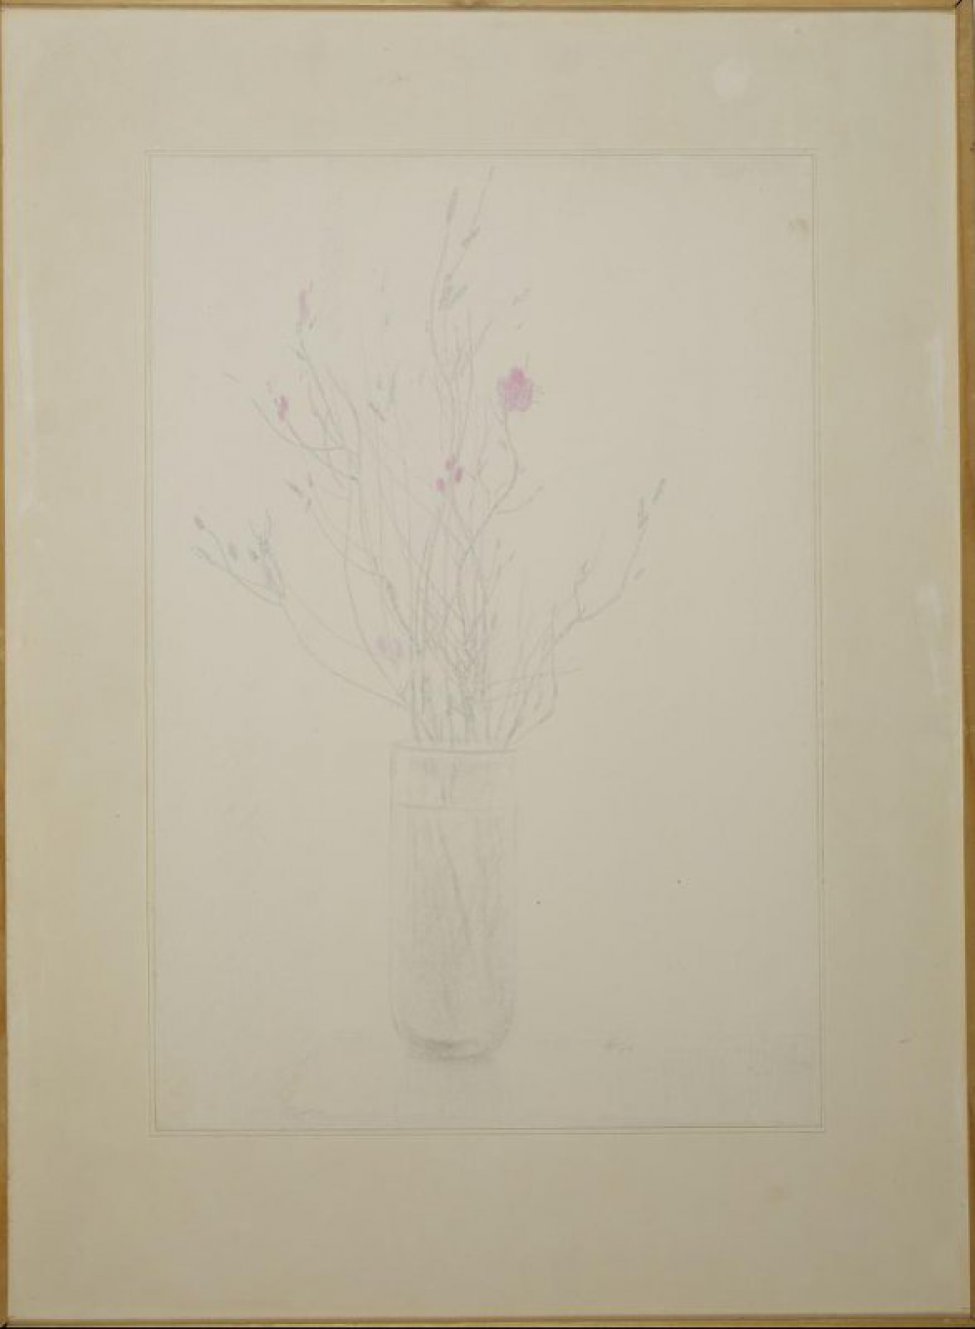 Изображен букет из веточек багульника с мелкими сиреневыми цветочками в стеклянном стакане.